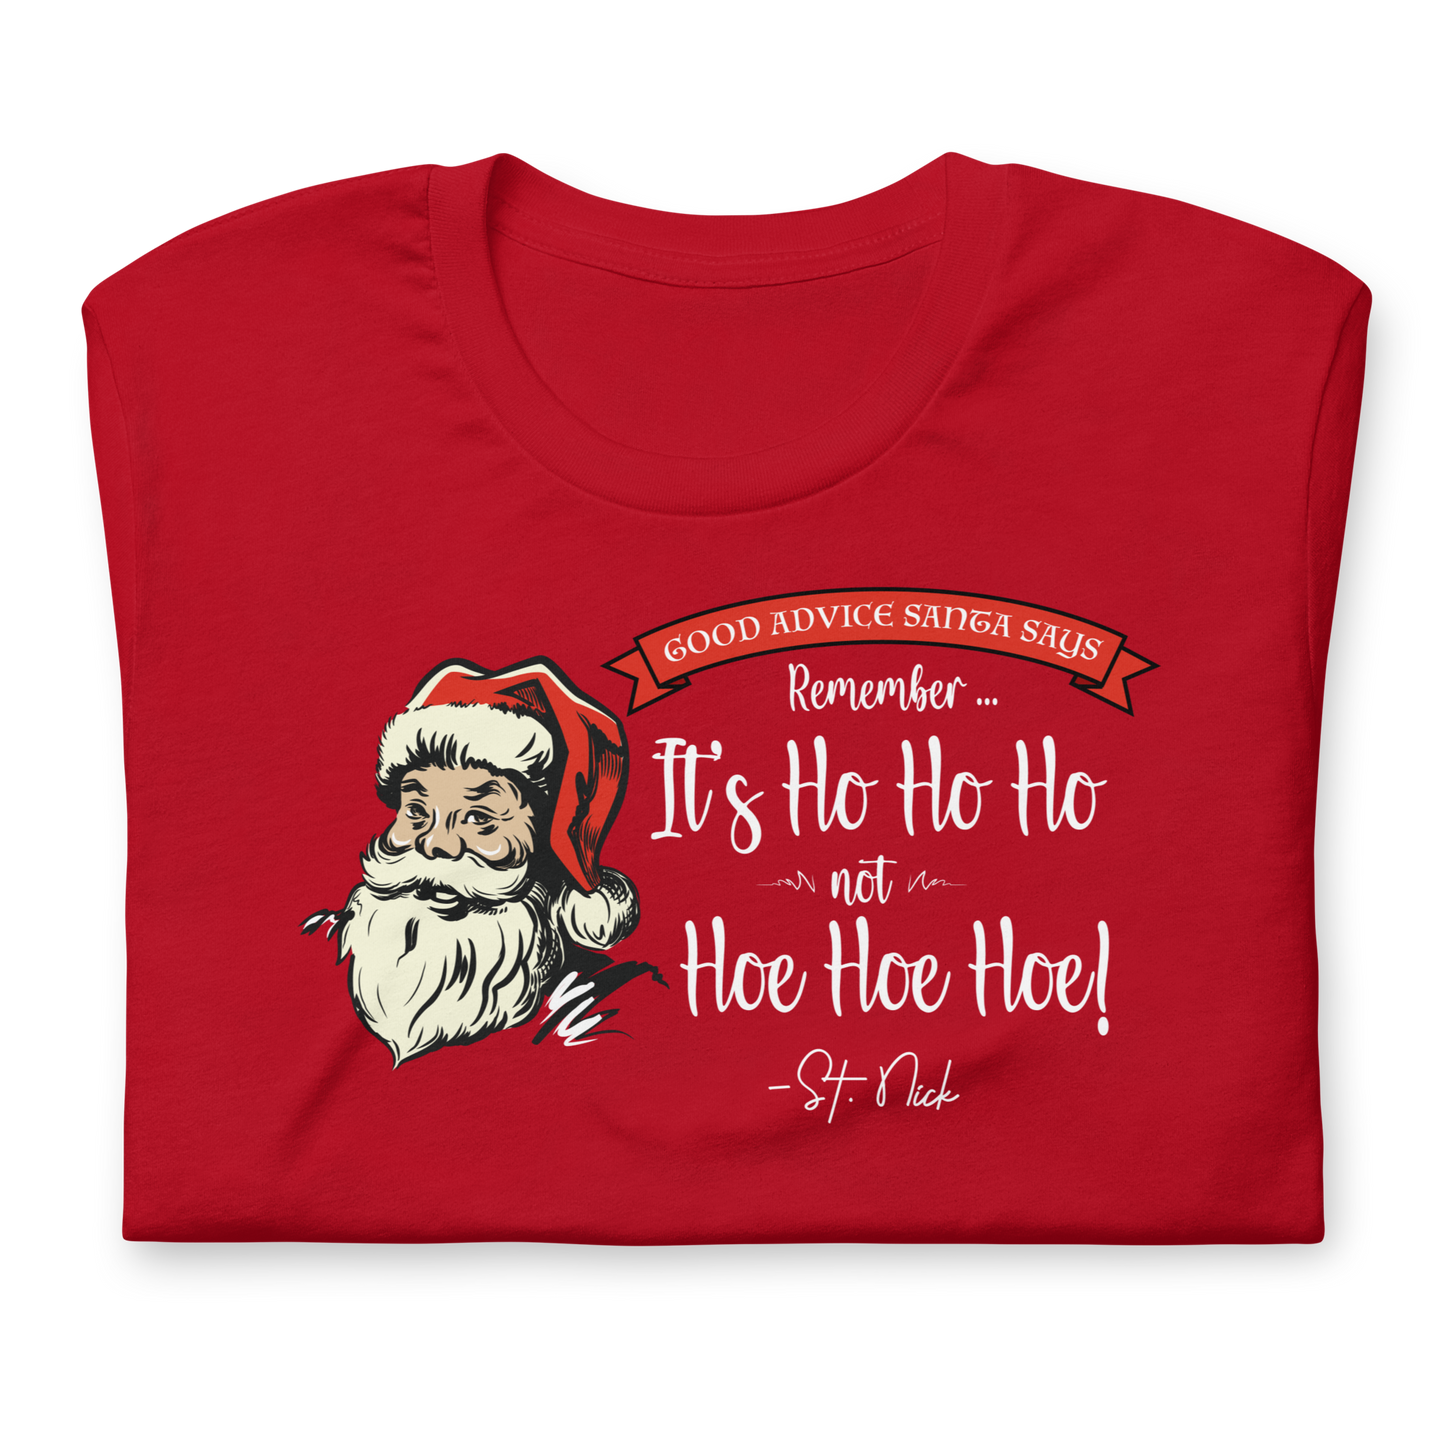 CHRISTMAS - Good Advice Santa Says: It's Ho Ho Ho not Hoe Hoe Hoe - Funny t-shirt